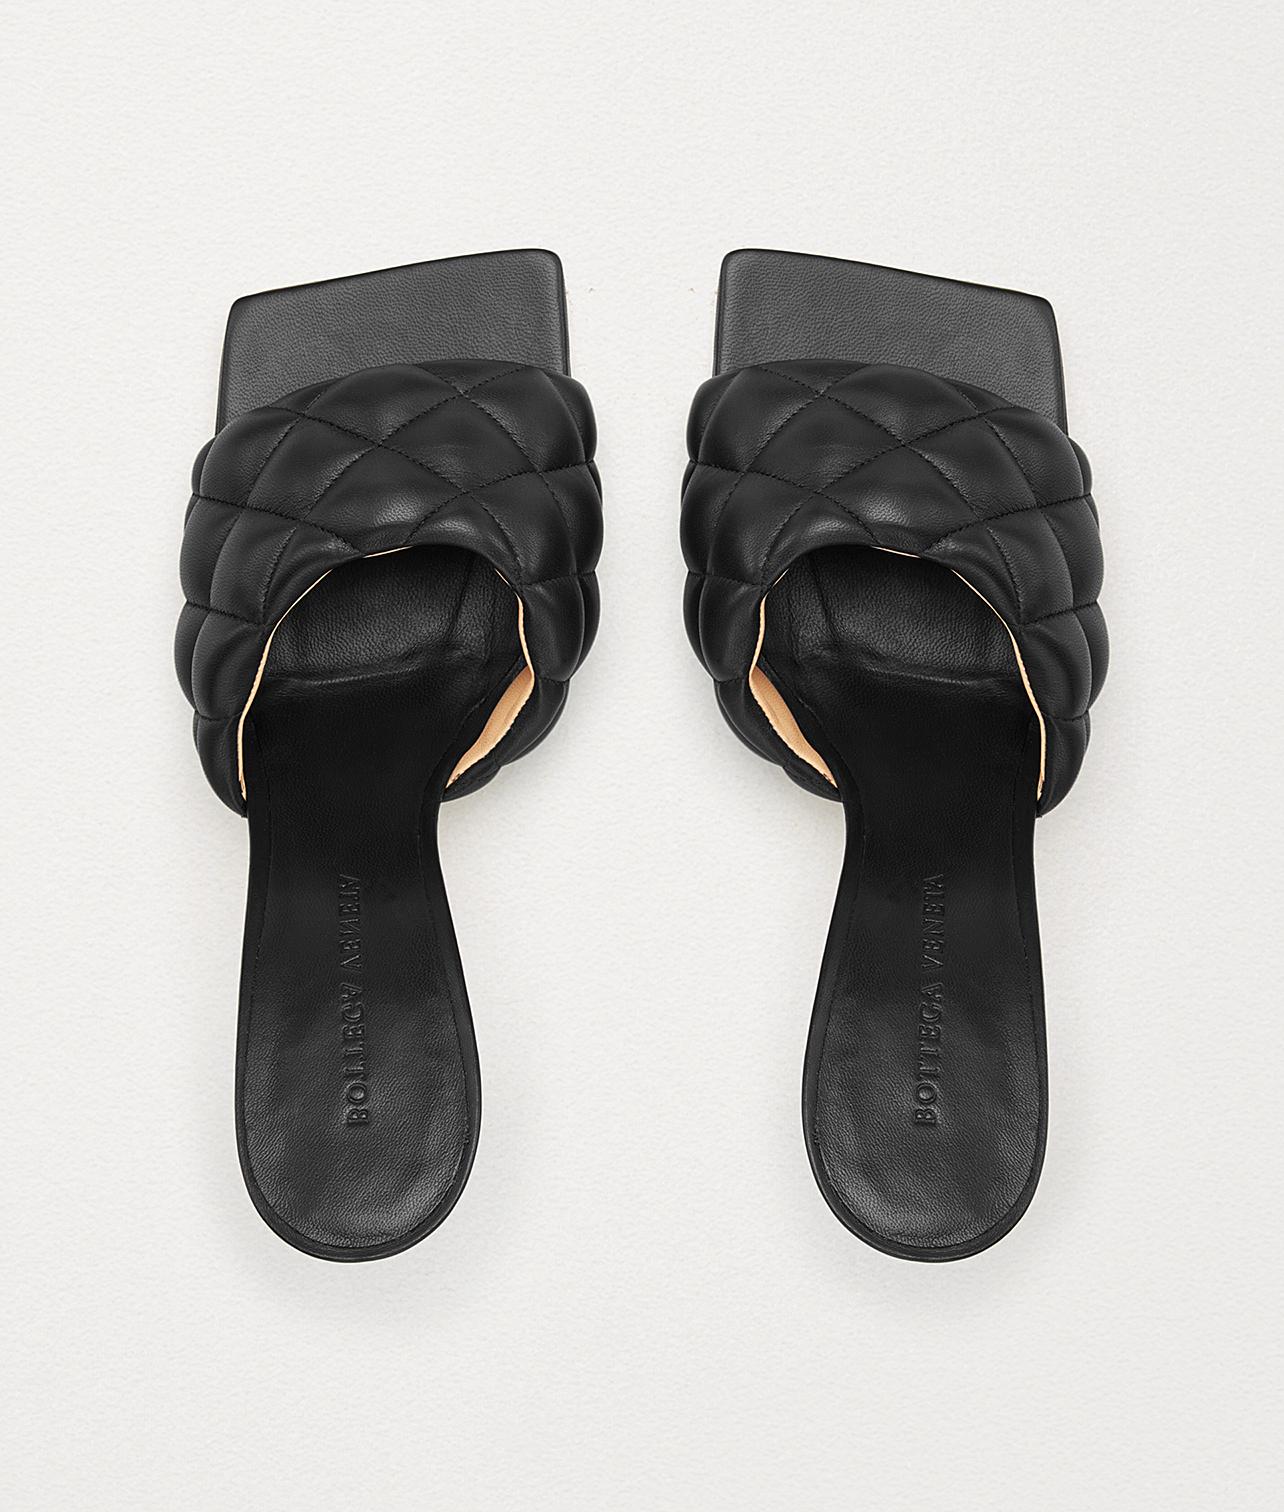 Bottega Veneta Leather Padded Sandals In Nappa Dream in Nero (Black) - Lyst